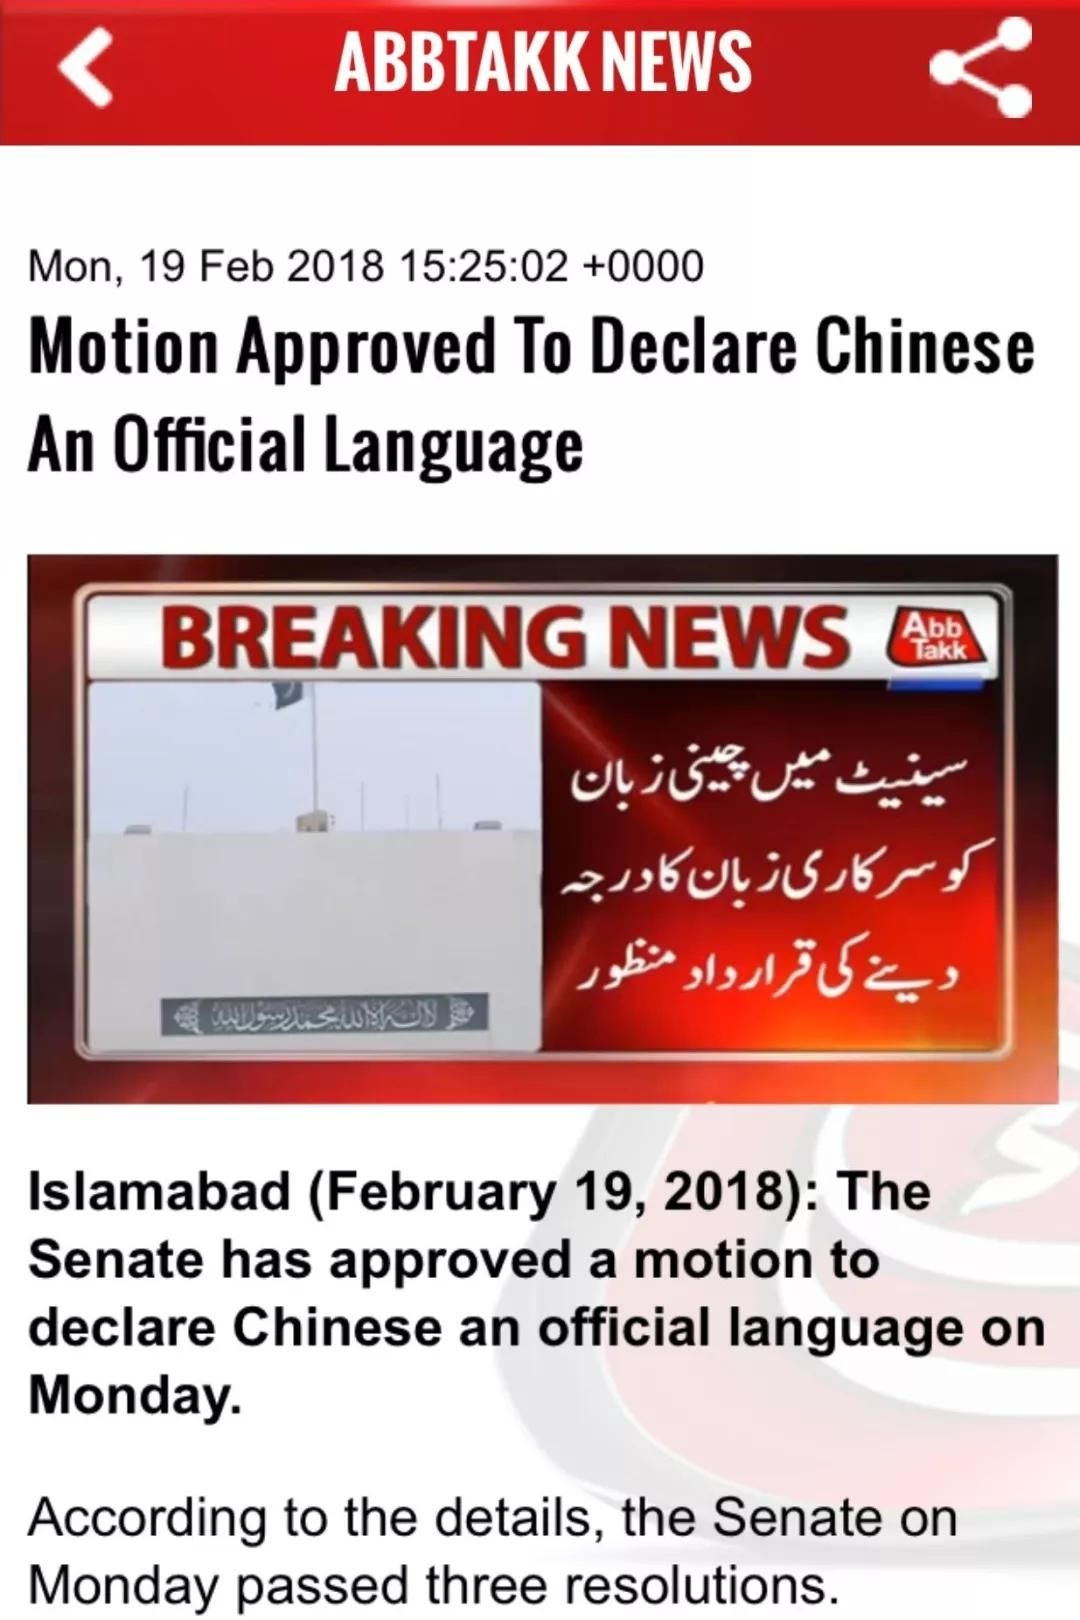 惊天大消息:汉语普通话要成巴基斯坦官方语言!真的吗?